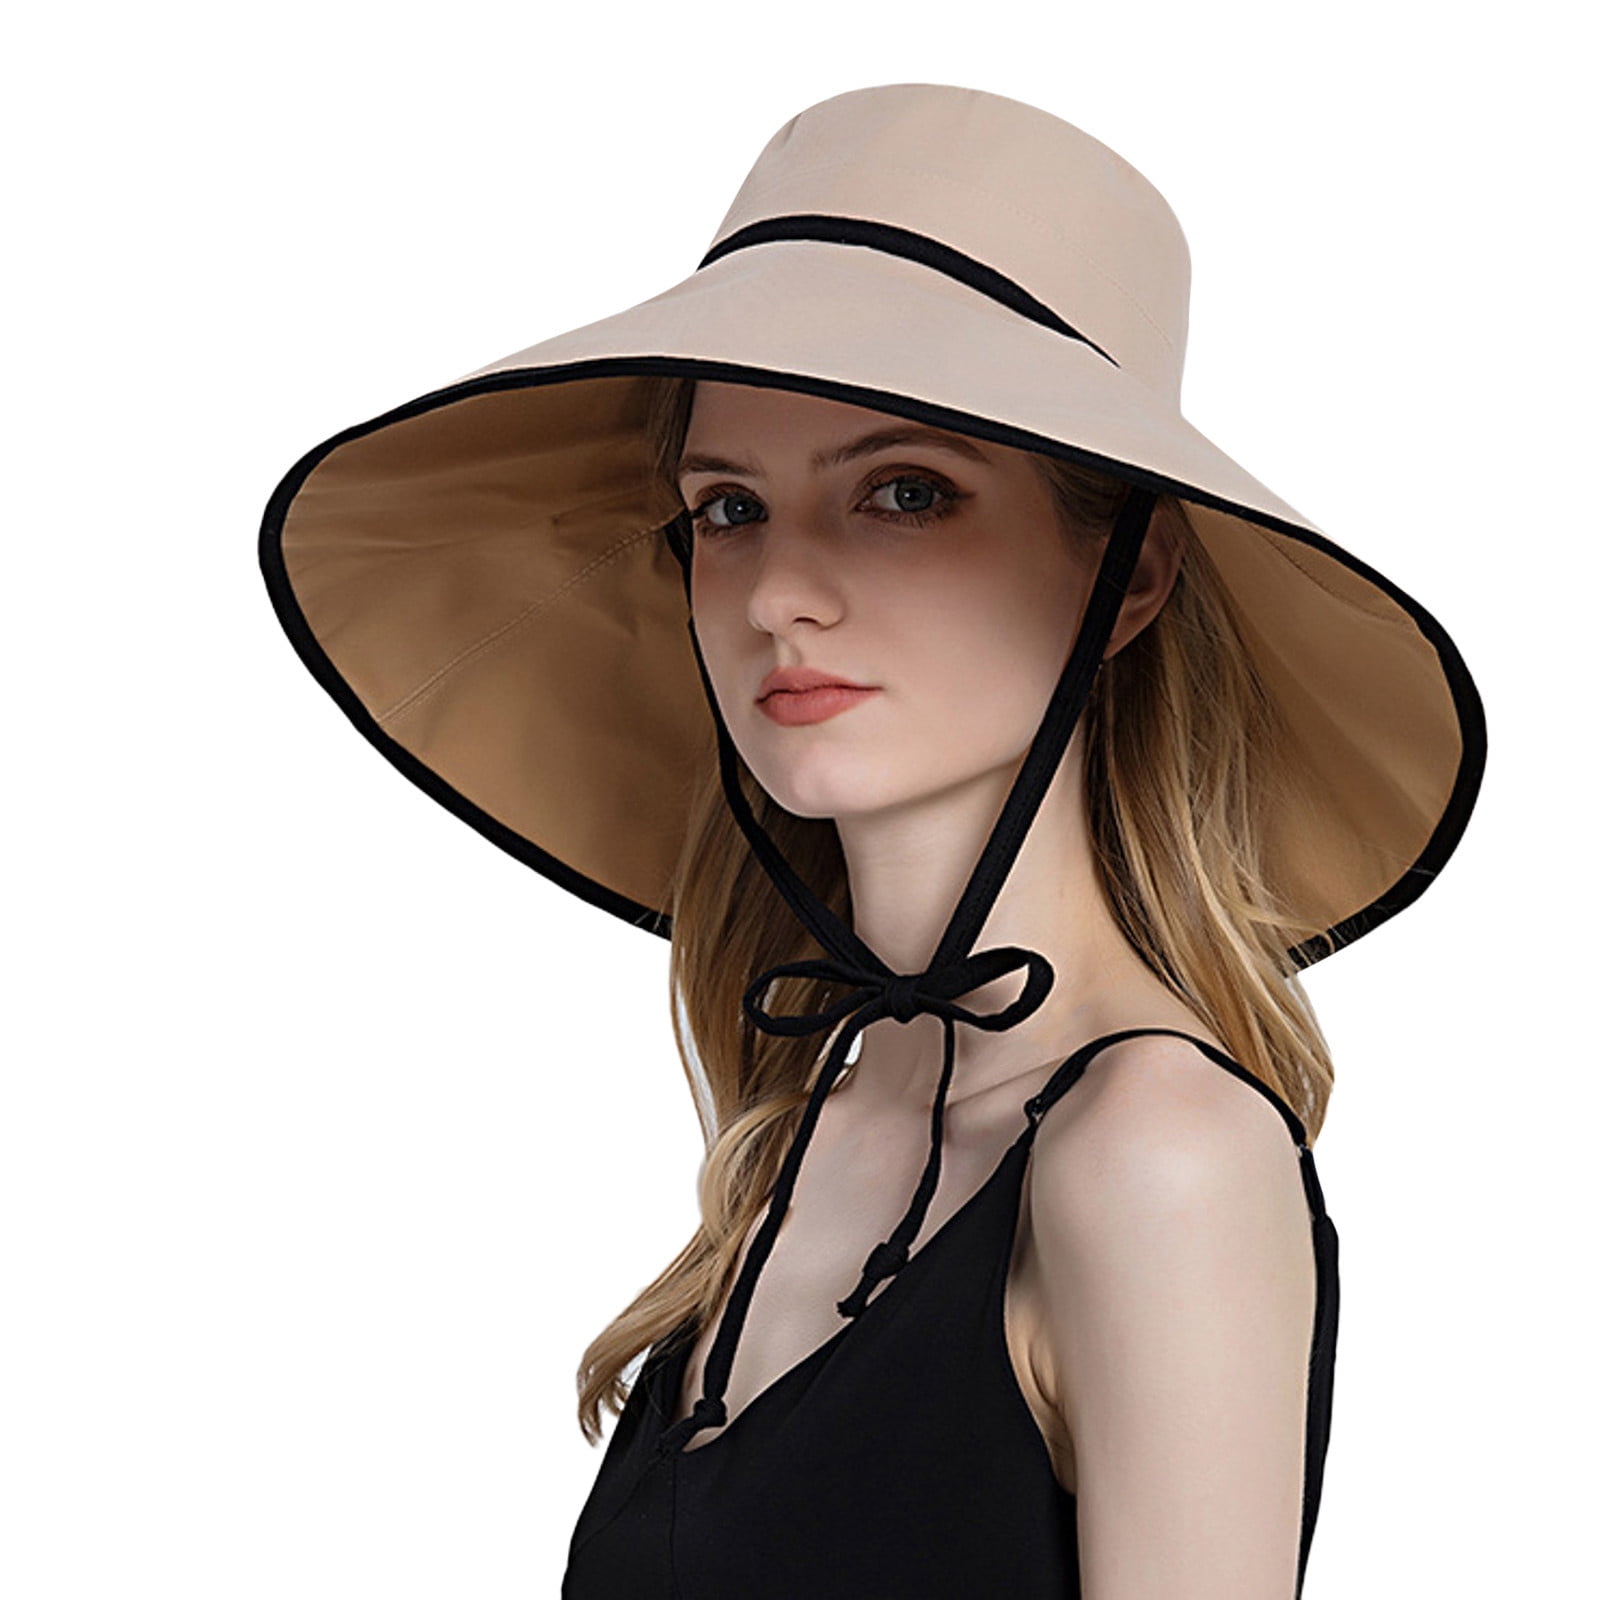 HSMQHJWE Women Bucket Hat Beach Cowboy Hats Women Outdoor Sunscreen Sun ...